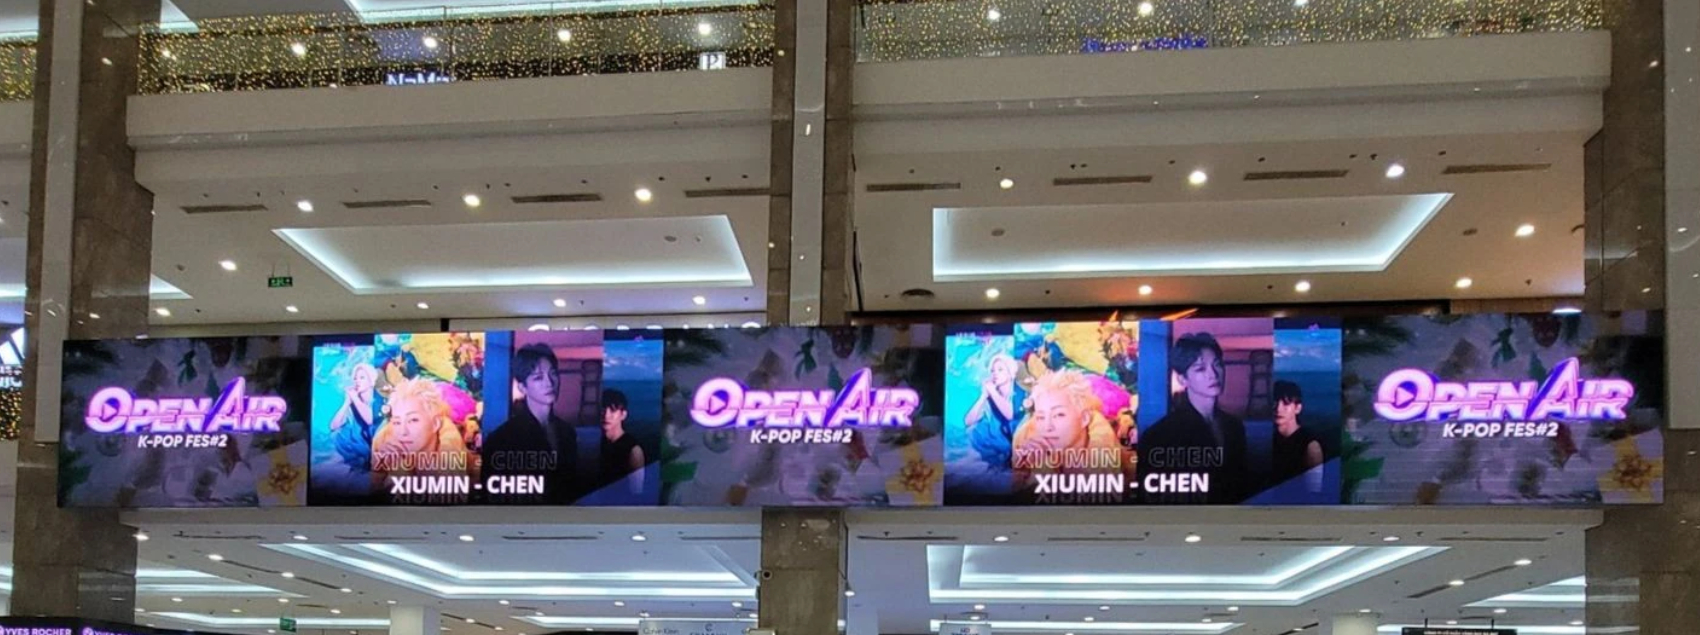 Đơn vị tổ chức liên tục chạy quảng cáo về hai đêm đại nhạc hội ở Mỹ Đình suốt hai tháng qua. Ảnh: BOM Entertainment.